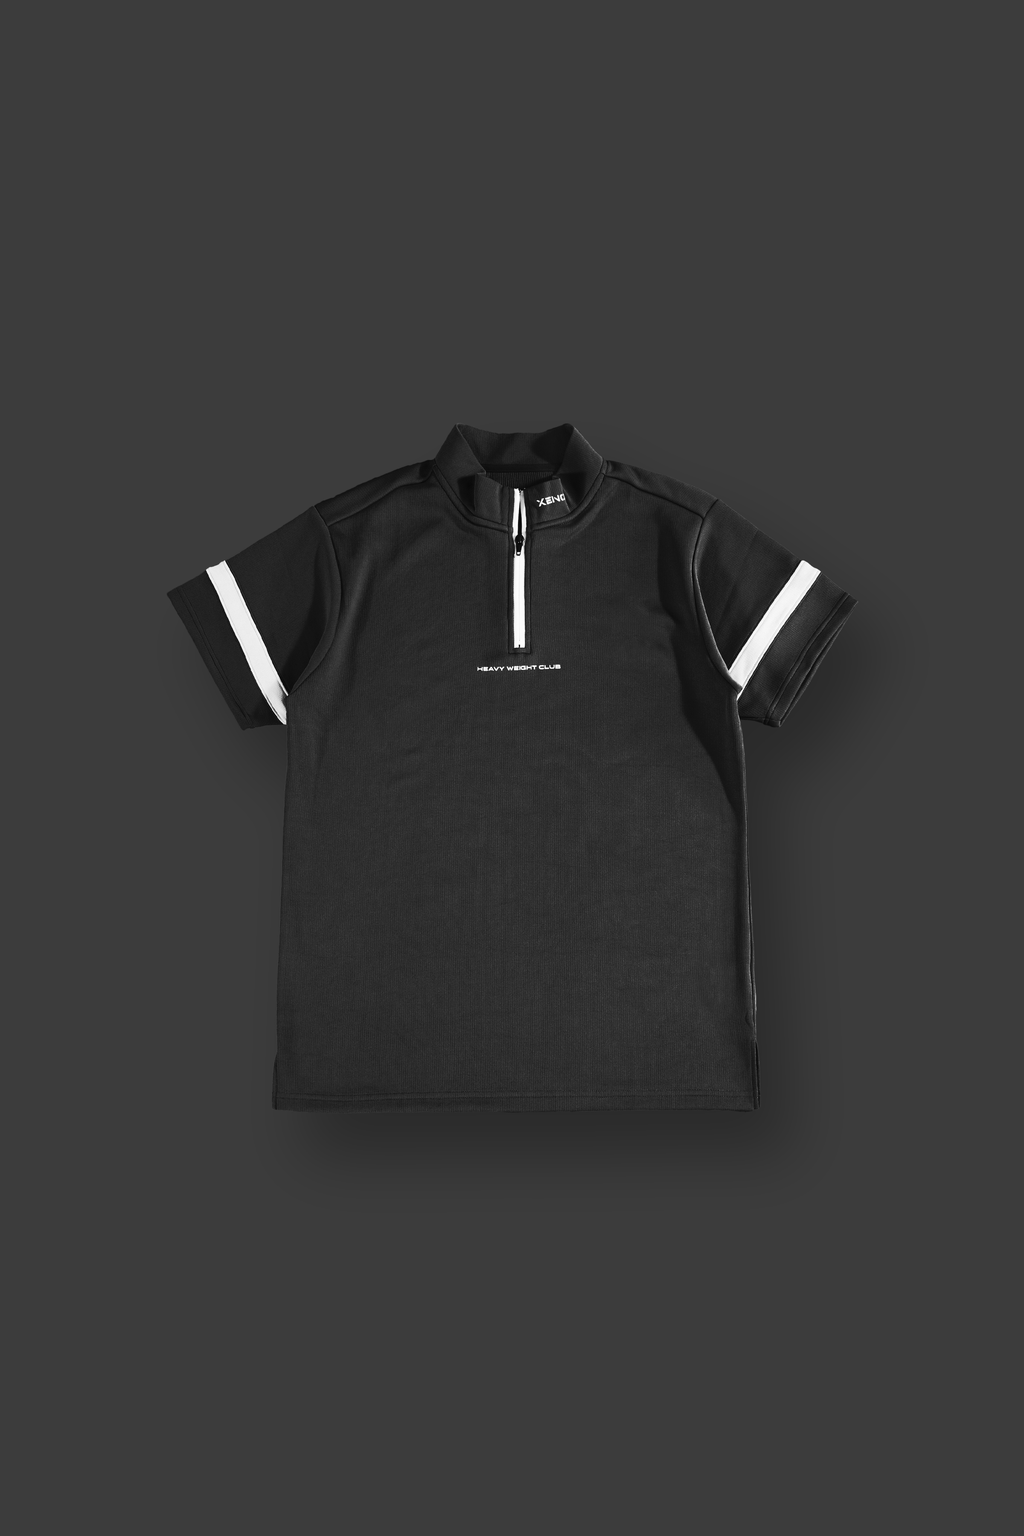 お買い得人気SALE XENO パーカー Tシャツ セットの通販 by Supreme's